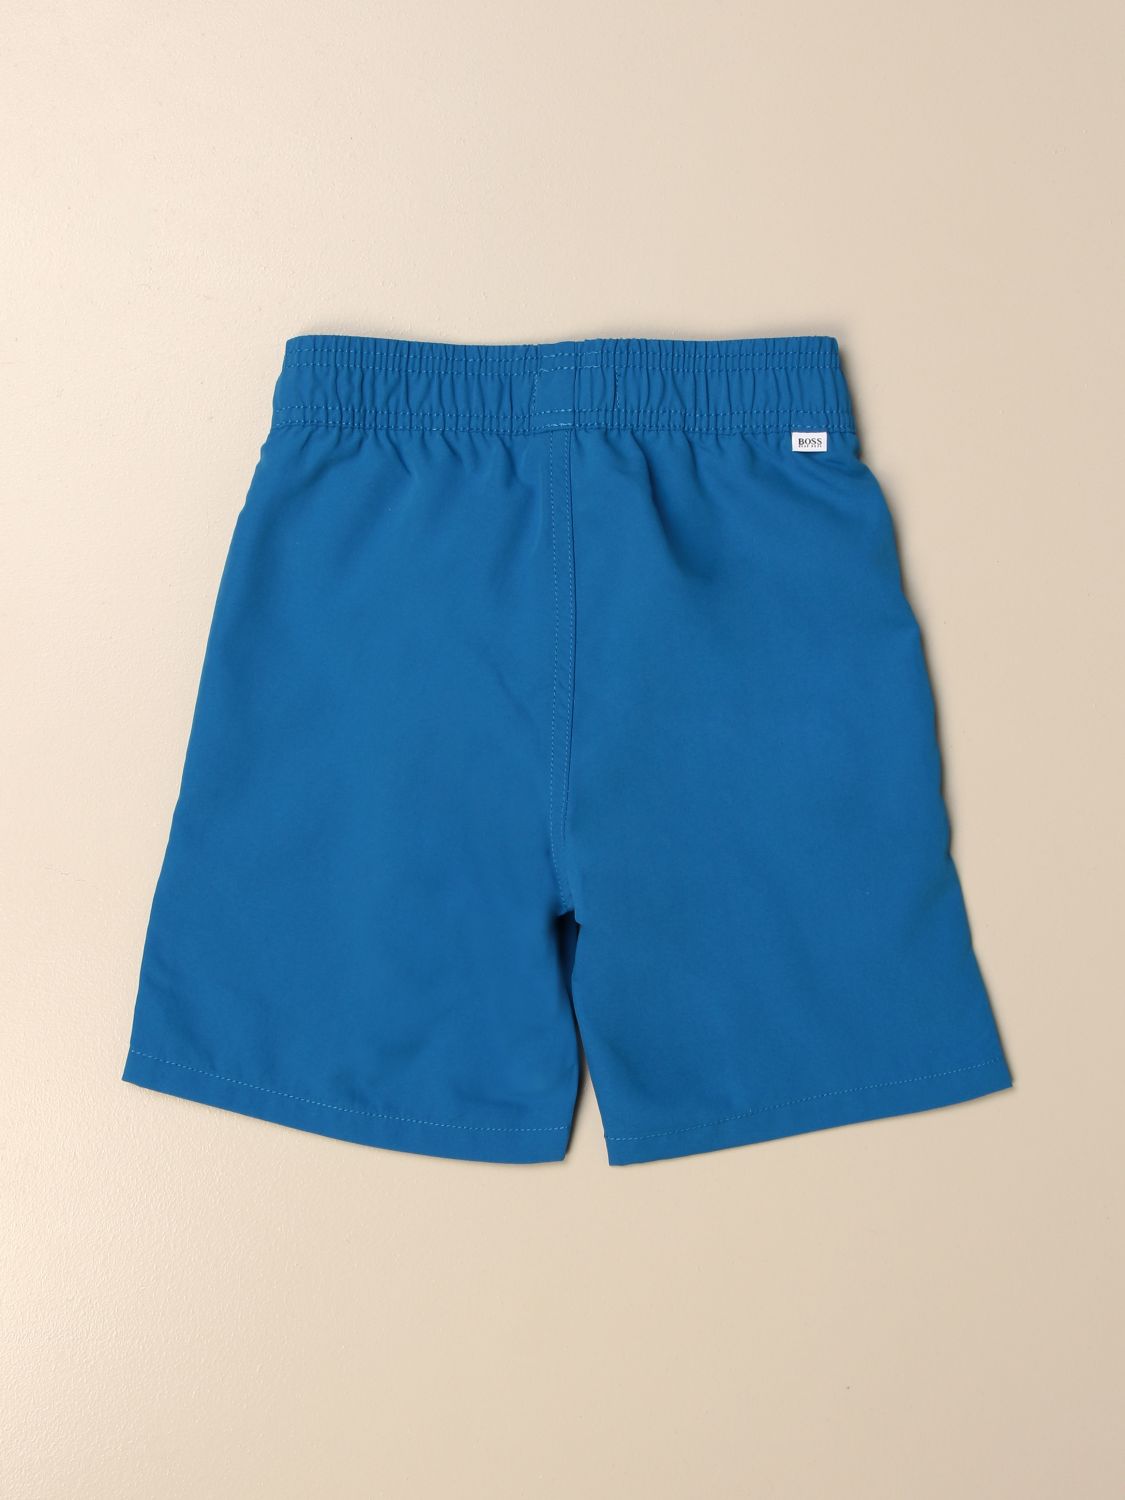 Shorts Hugo Boss: Swimsuit kids Hugo Boss gnawed blue 2